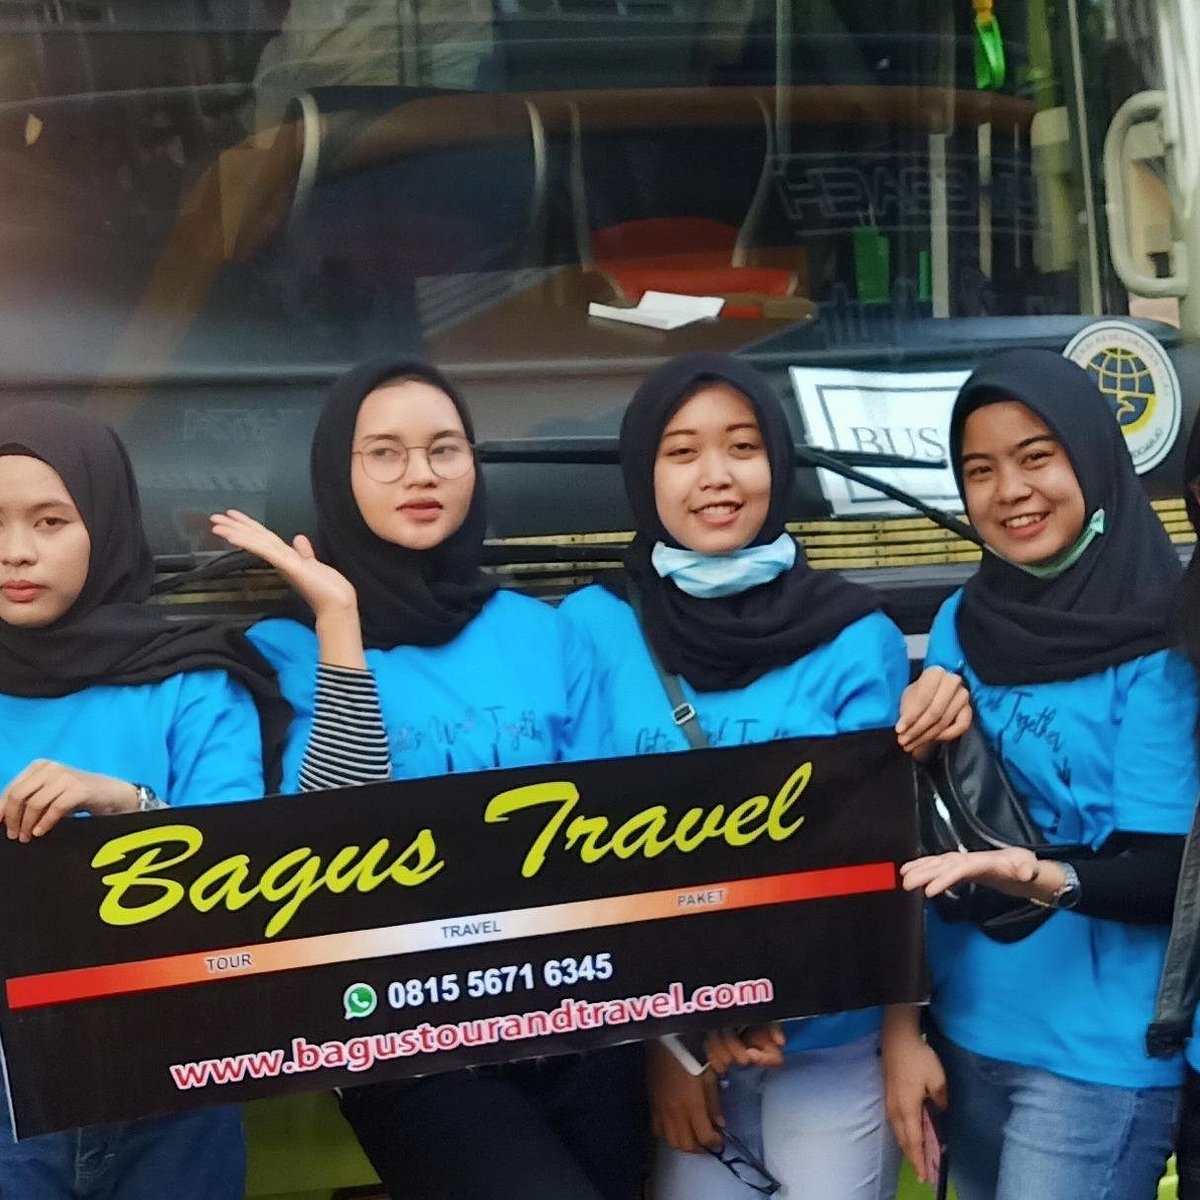 bagus travel surabaya kabupaten sidoarjo jawa timur